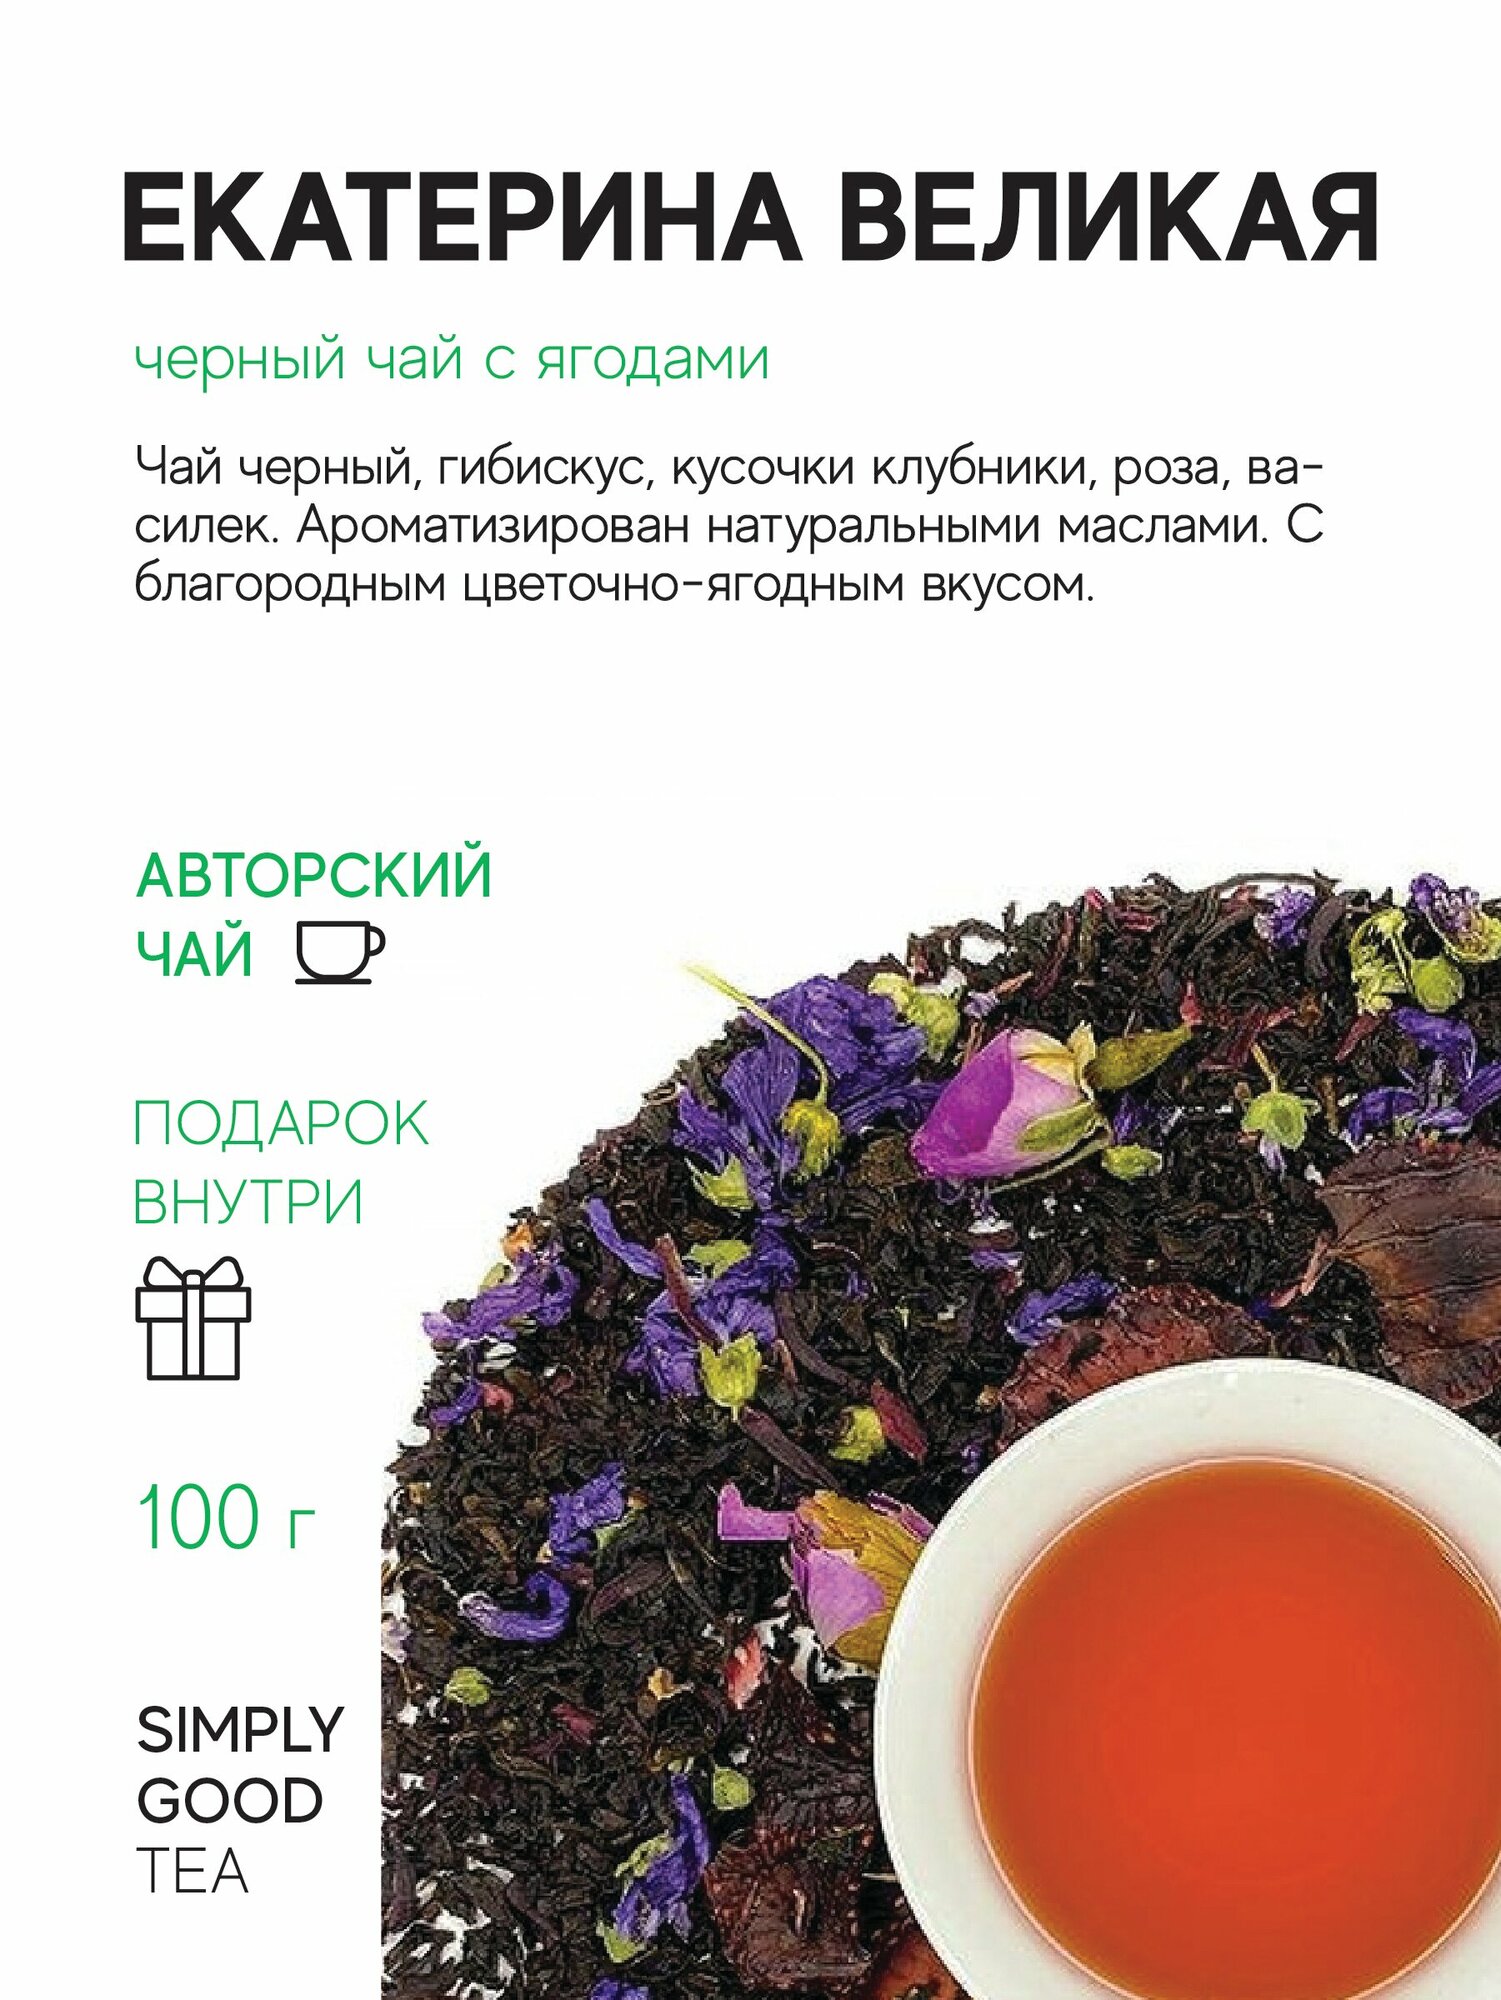 Чай черный с добавками Екатерина великая 100 г